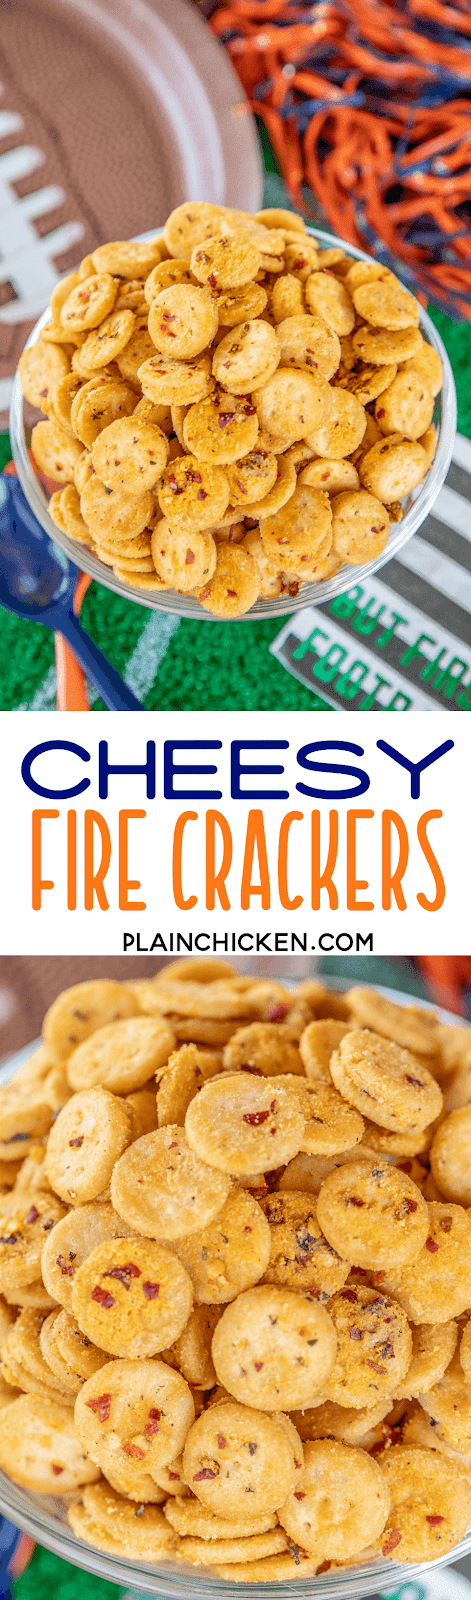 Cheesy Fire Crackers - Football Friday | Plain Chicken®